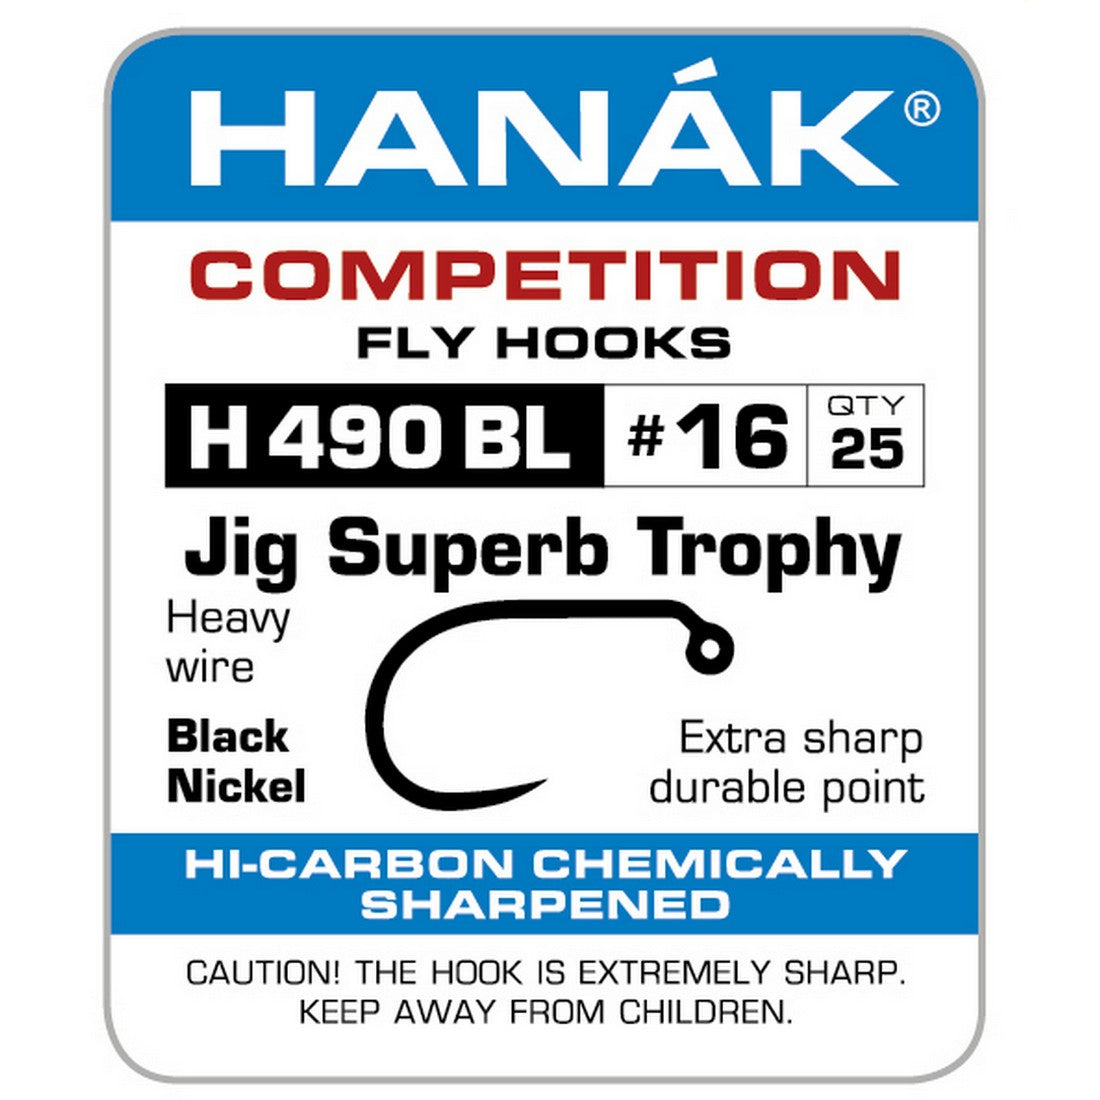 Barbless Hooks HANAK Competition H 490 BL Jig Superb Trophy – Smart Angling